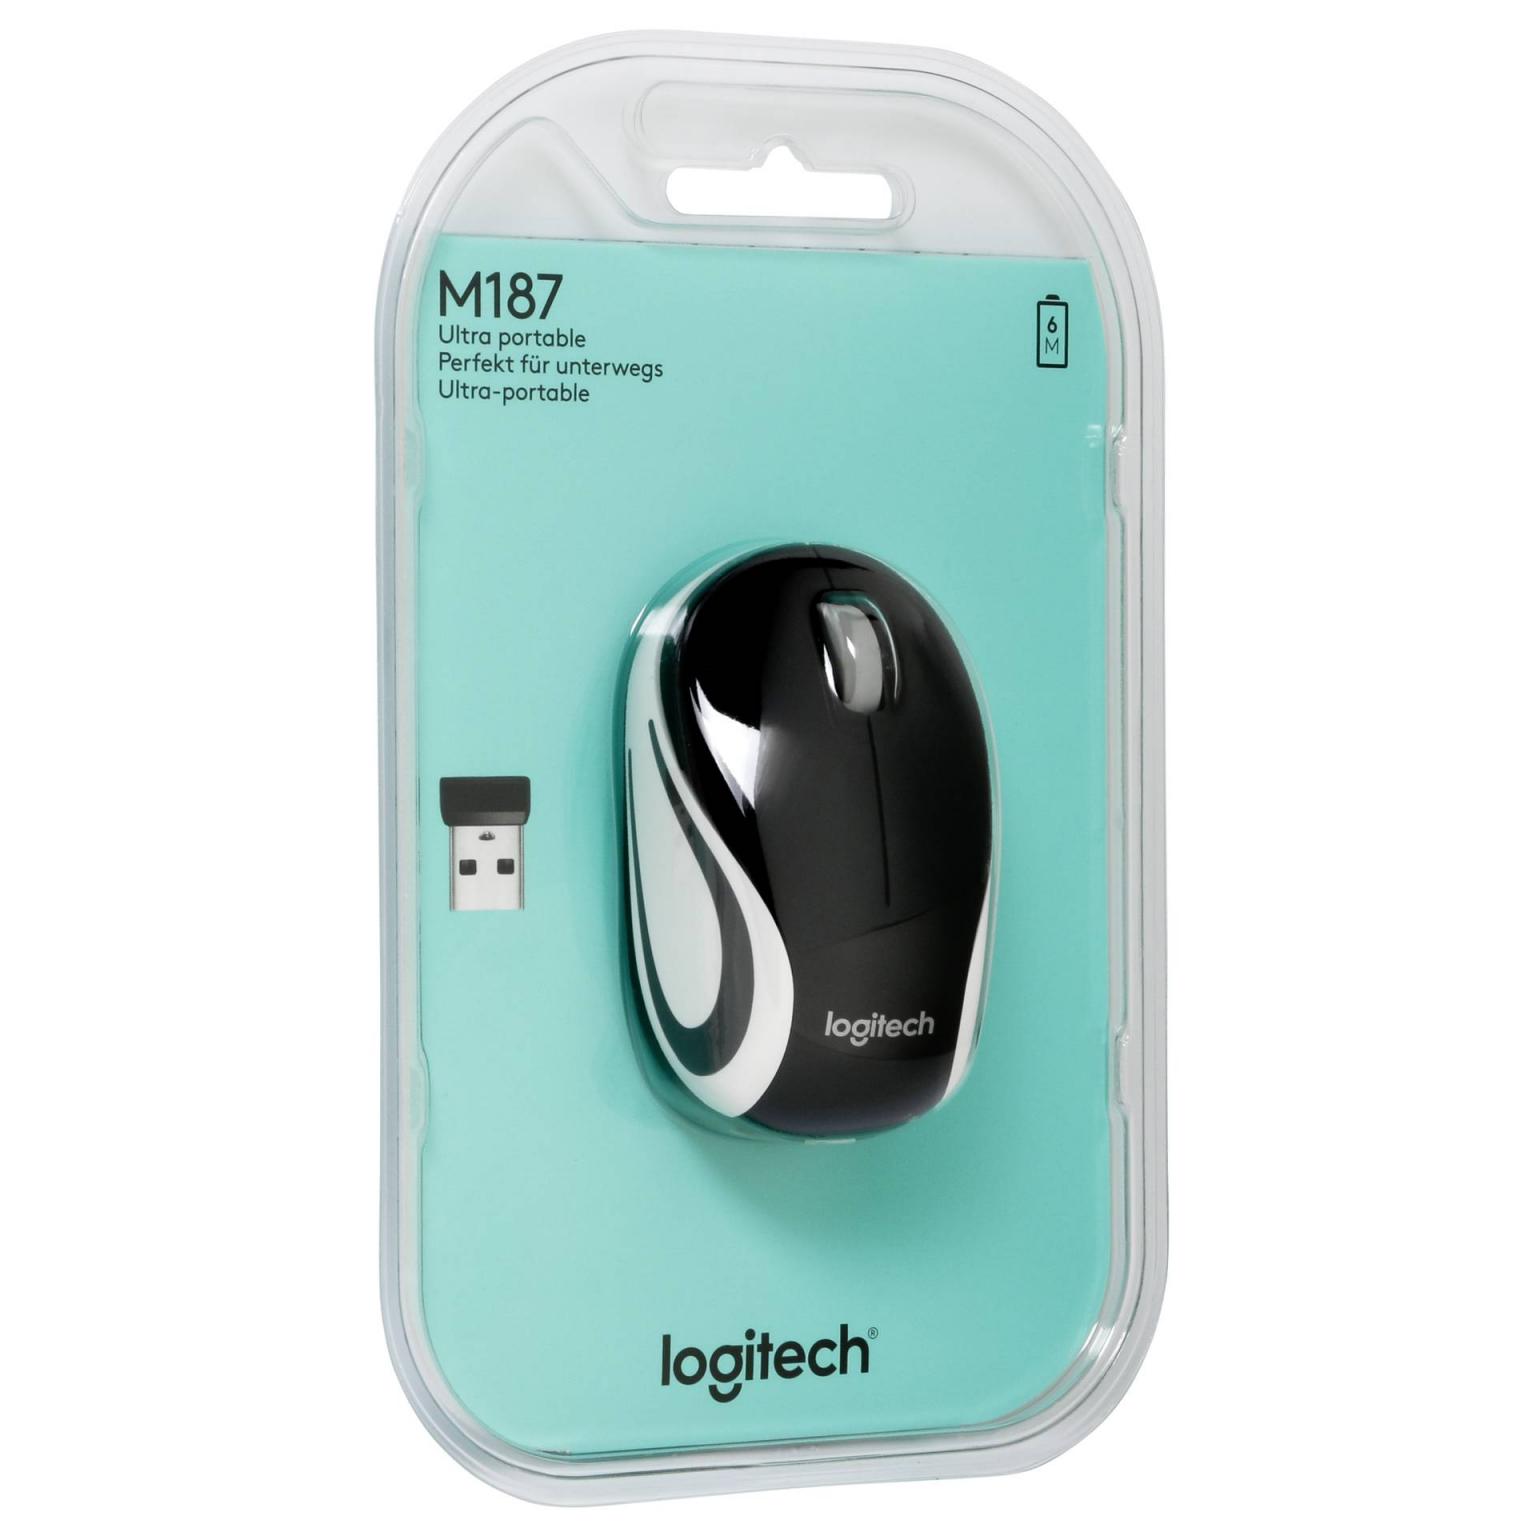 Mini souris sans fil Logitech M187, souris légère et ultra-portable